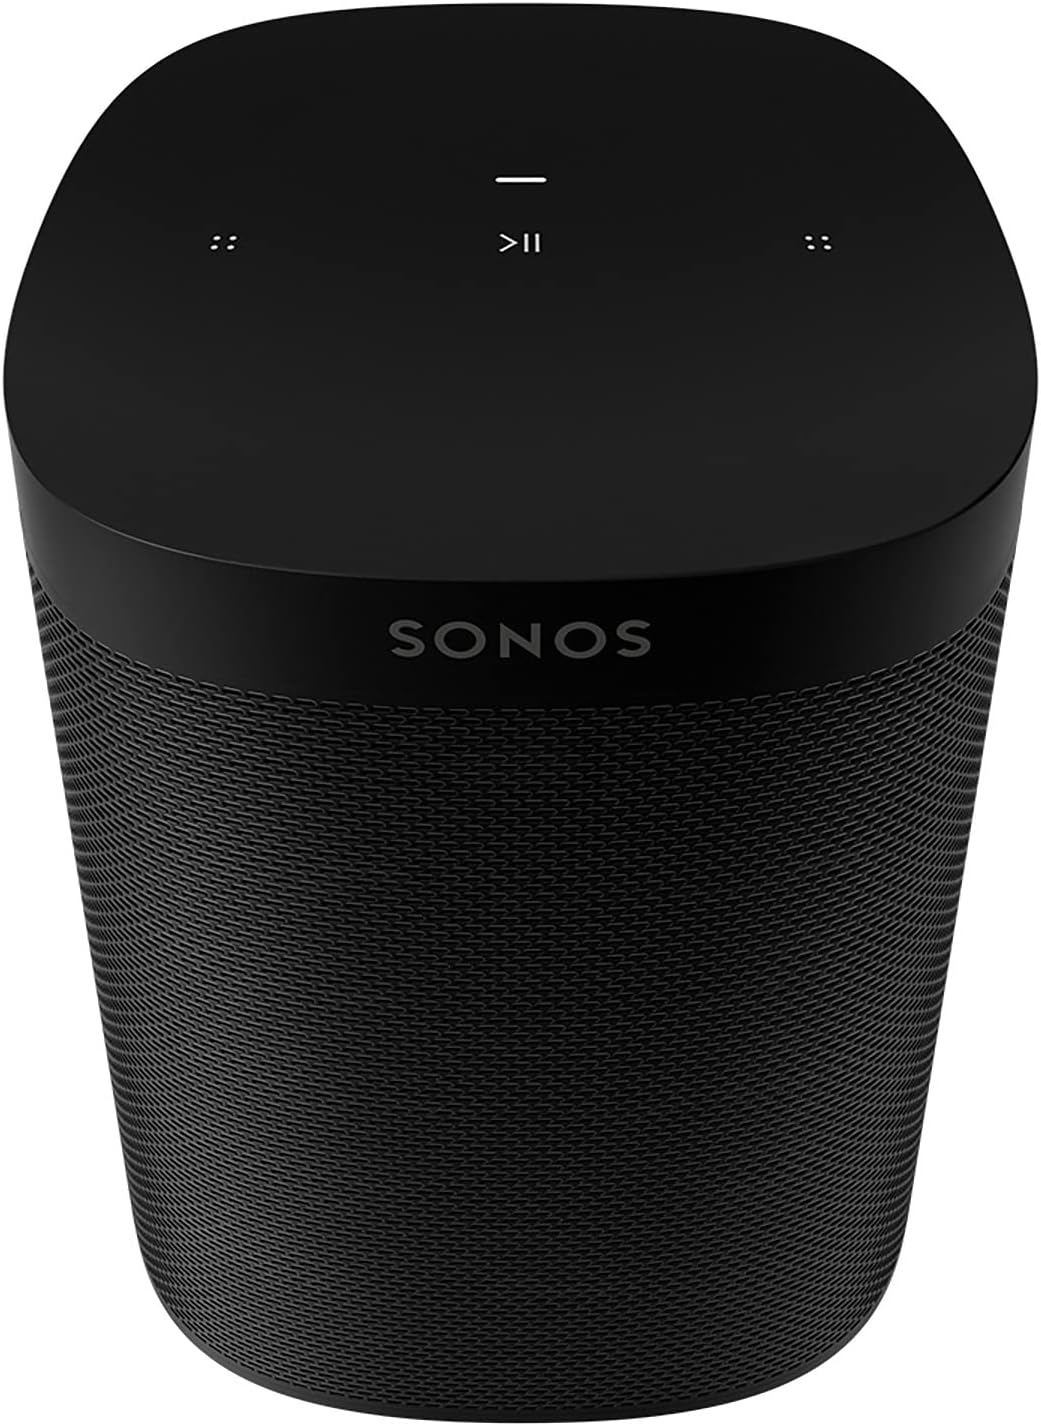 Sonos One SL Wireless Speaker Black